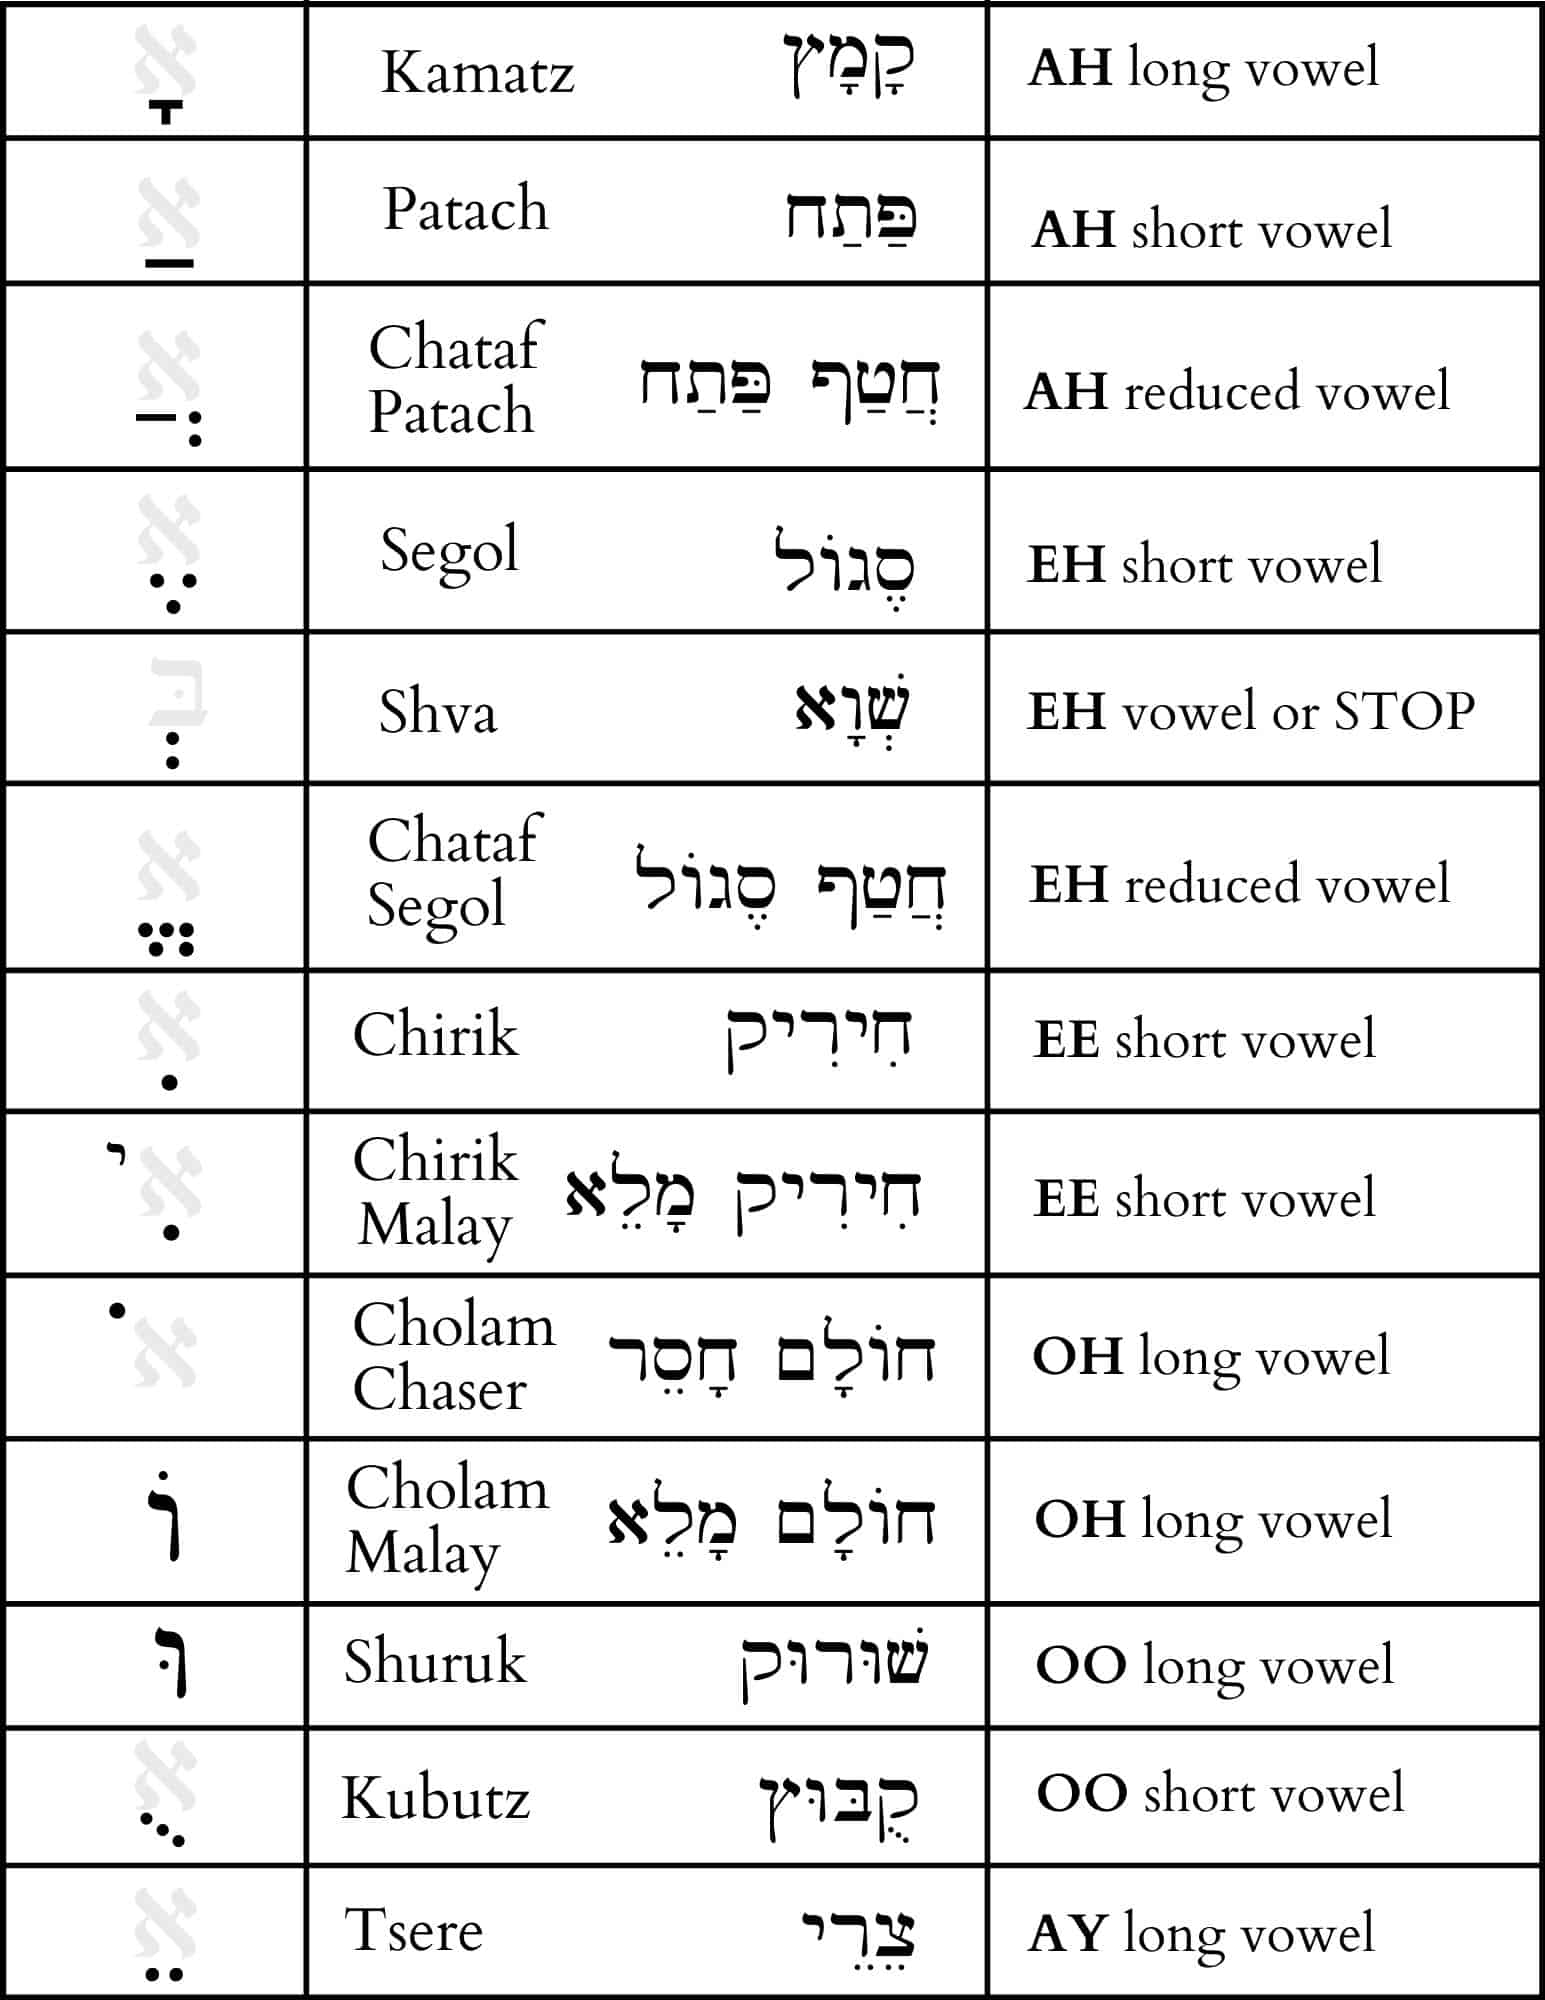 Free Printable Hebrew Alphabet